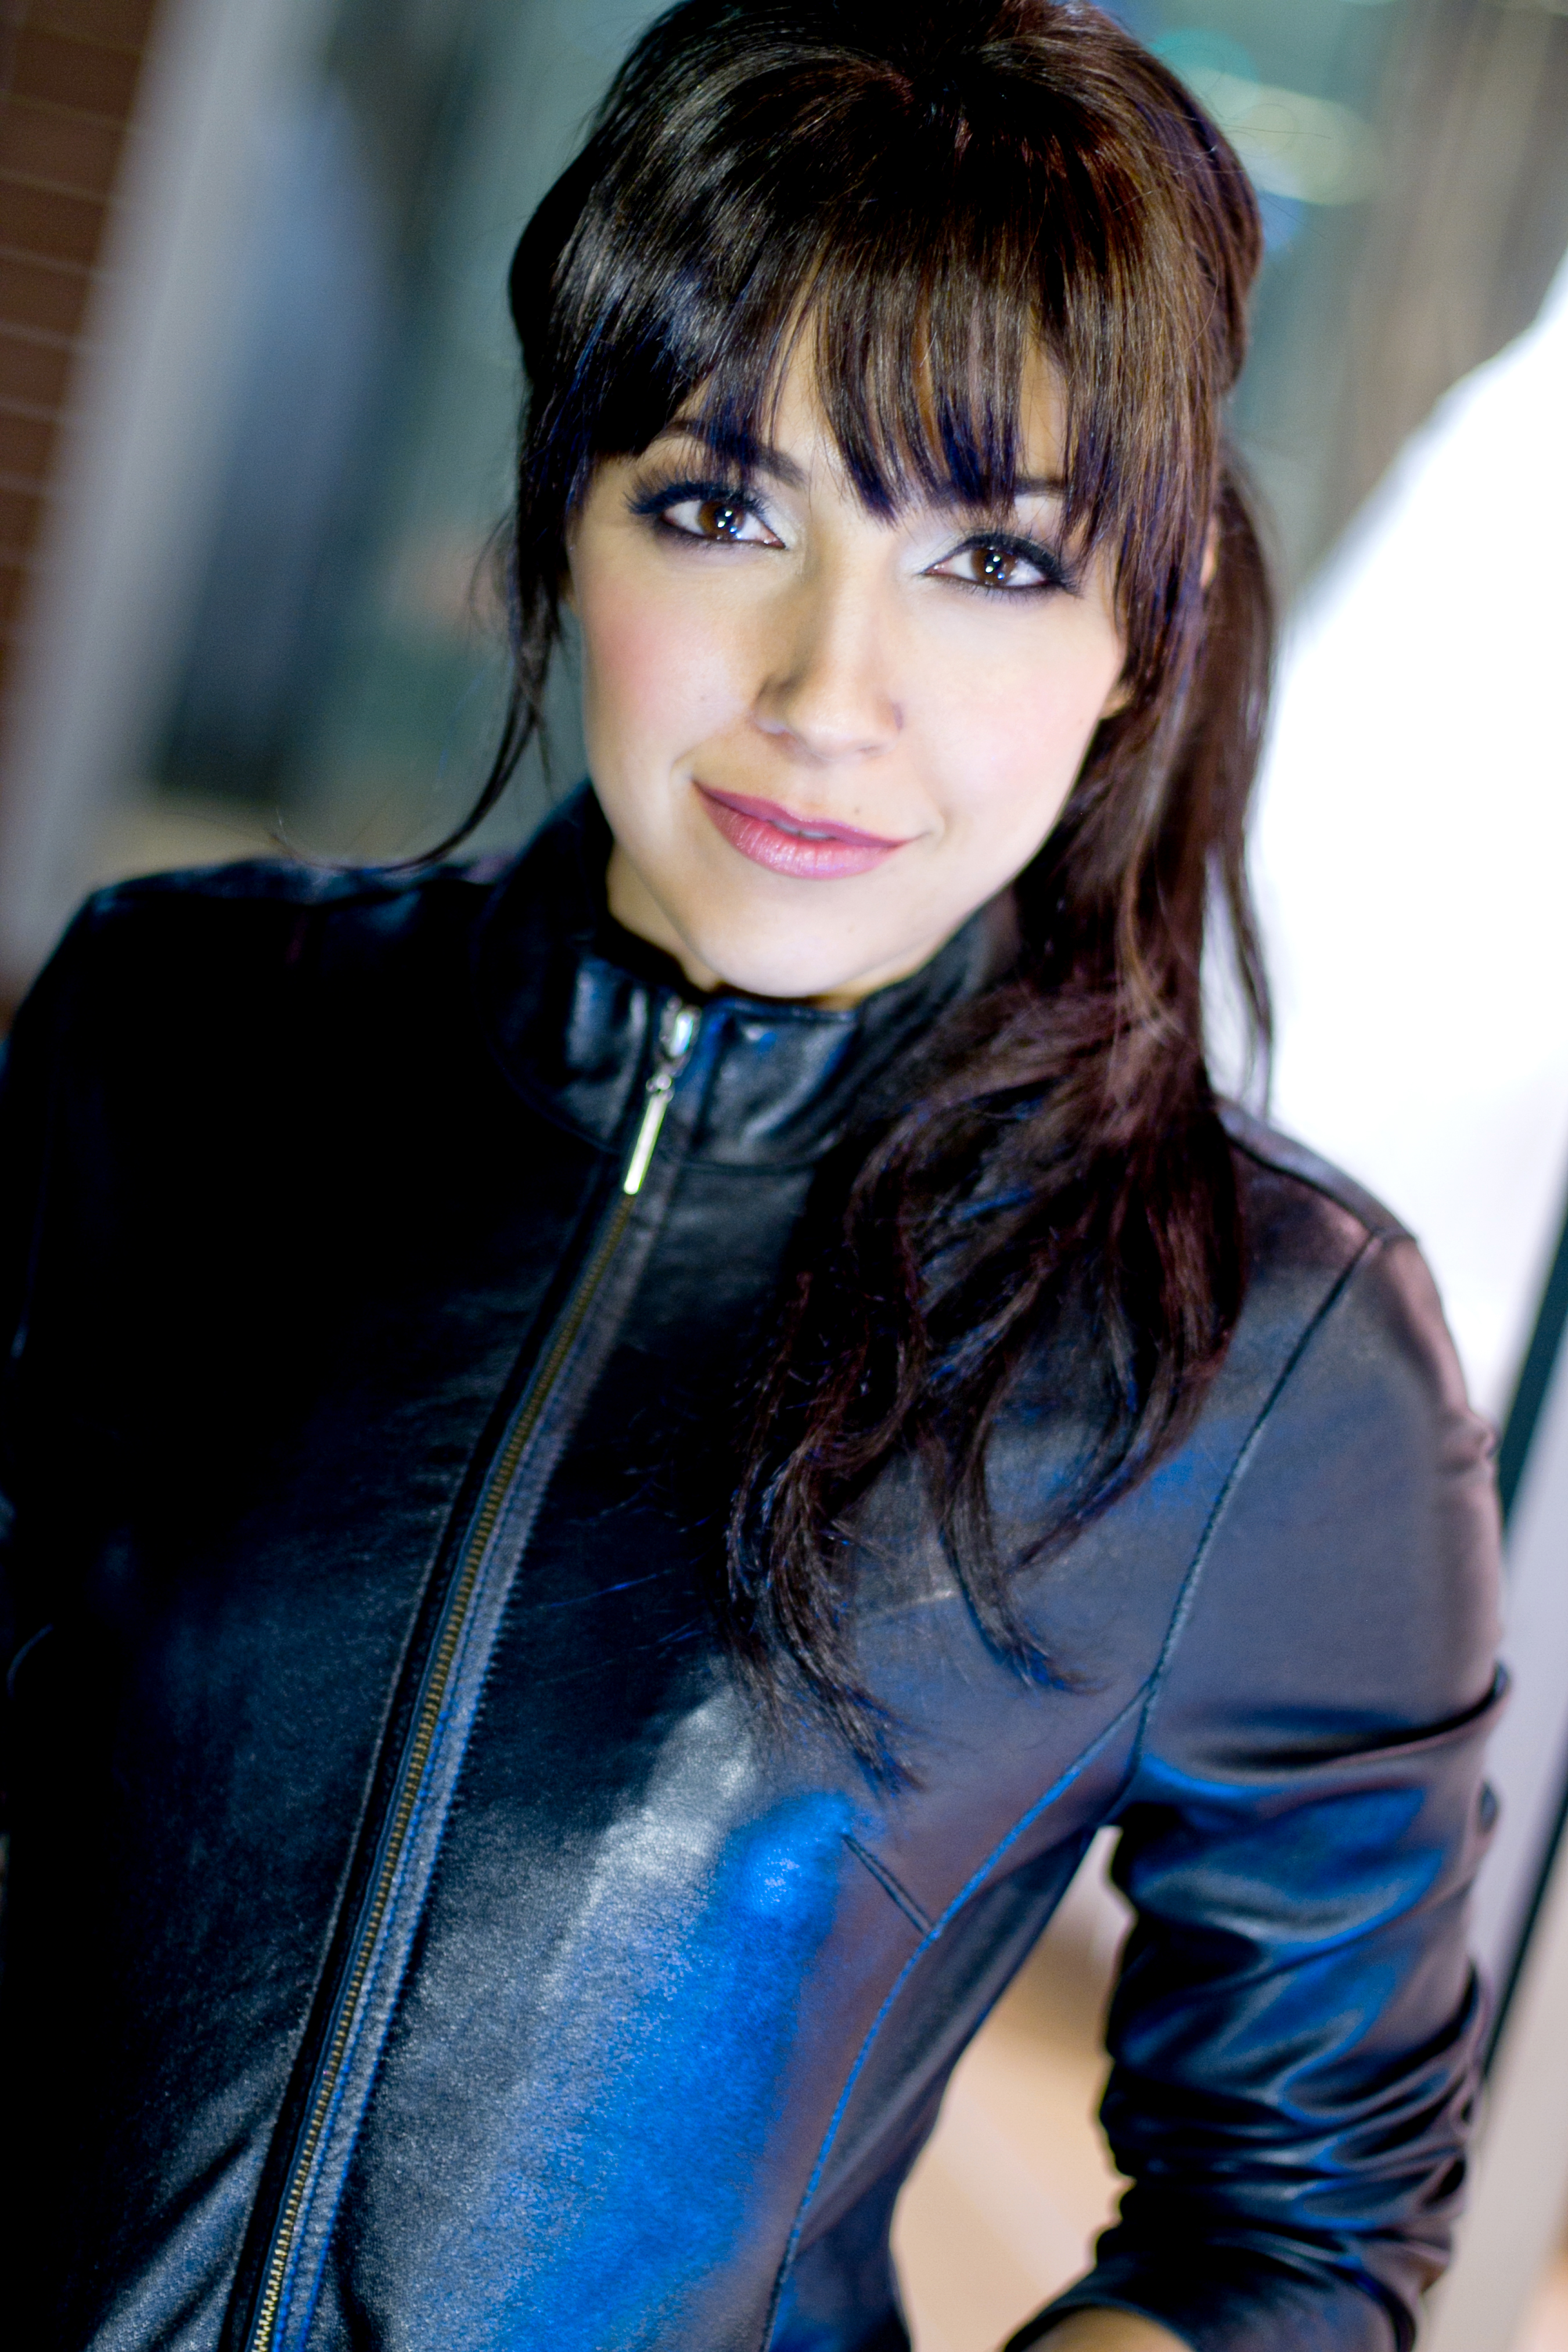 Yvette Gonzalez-Nacer